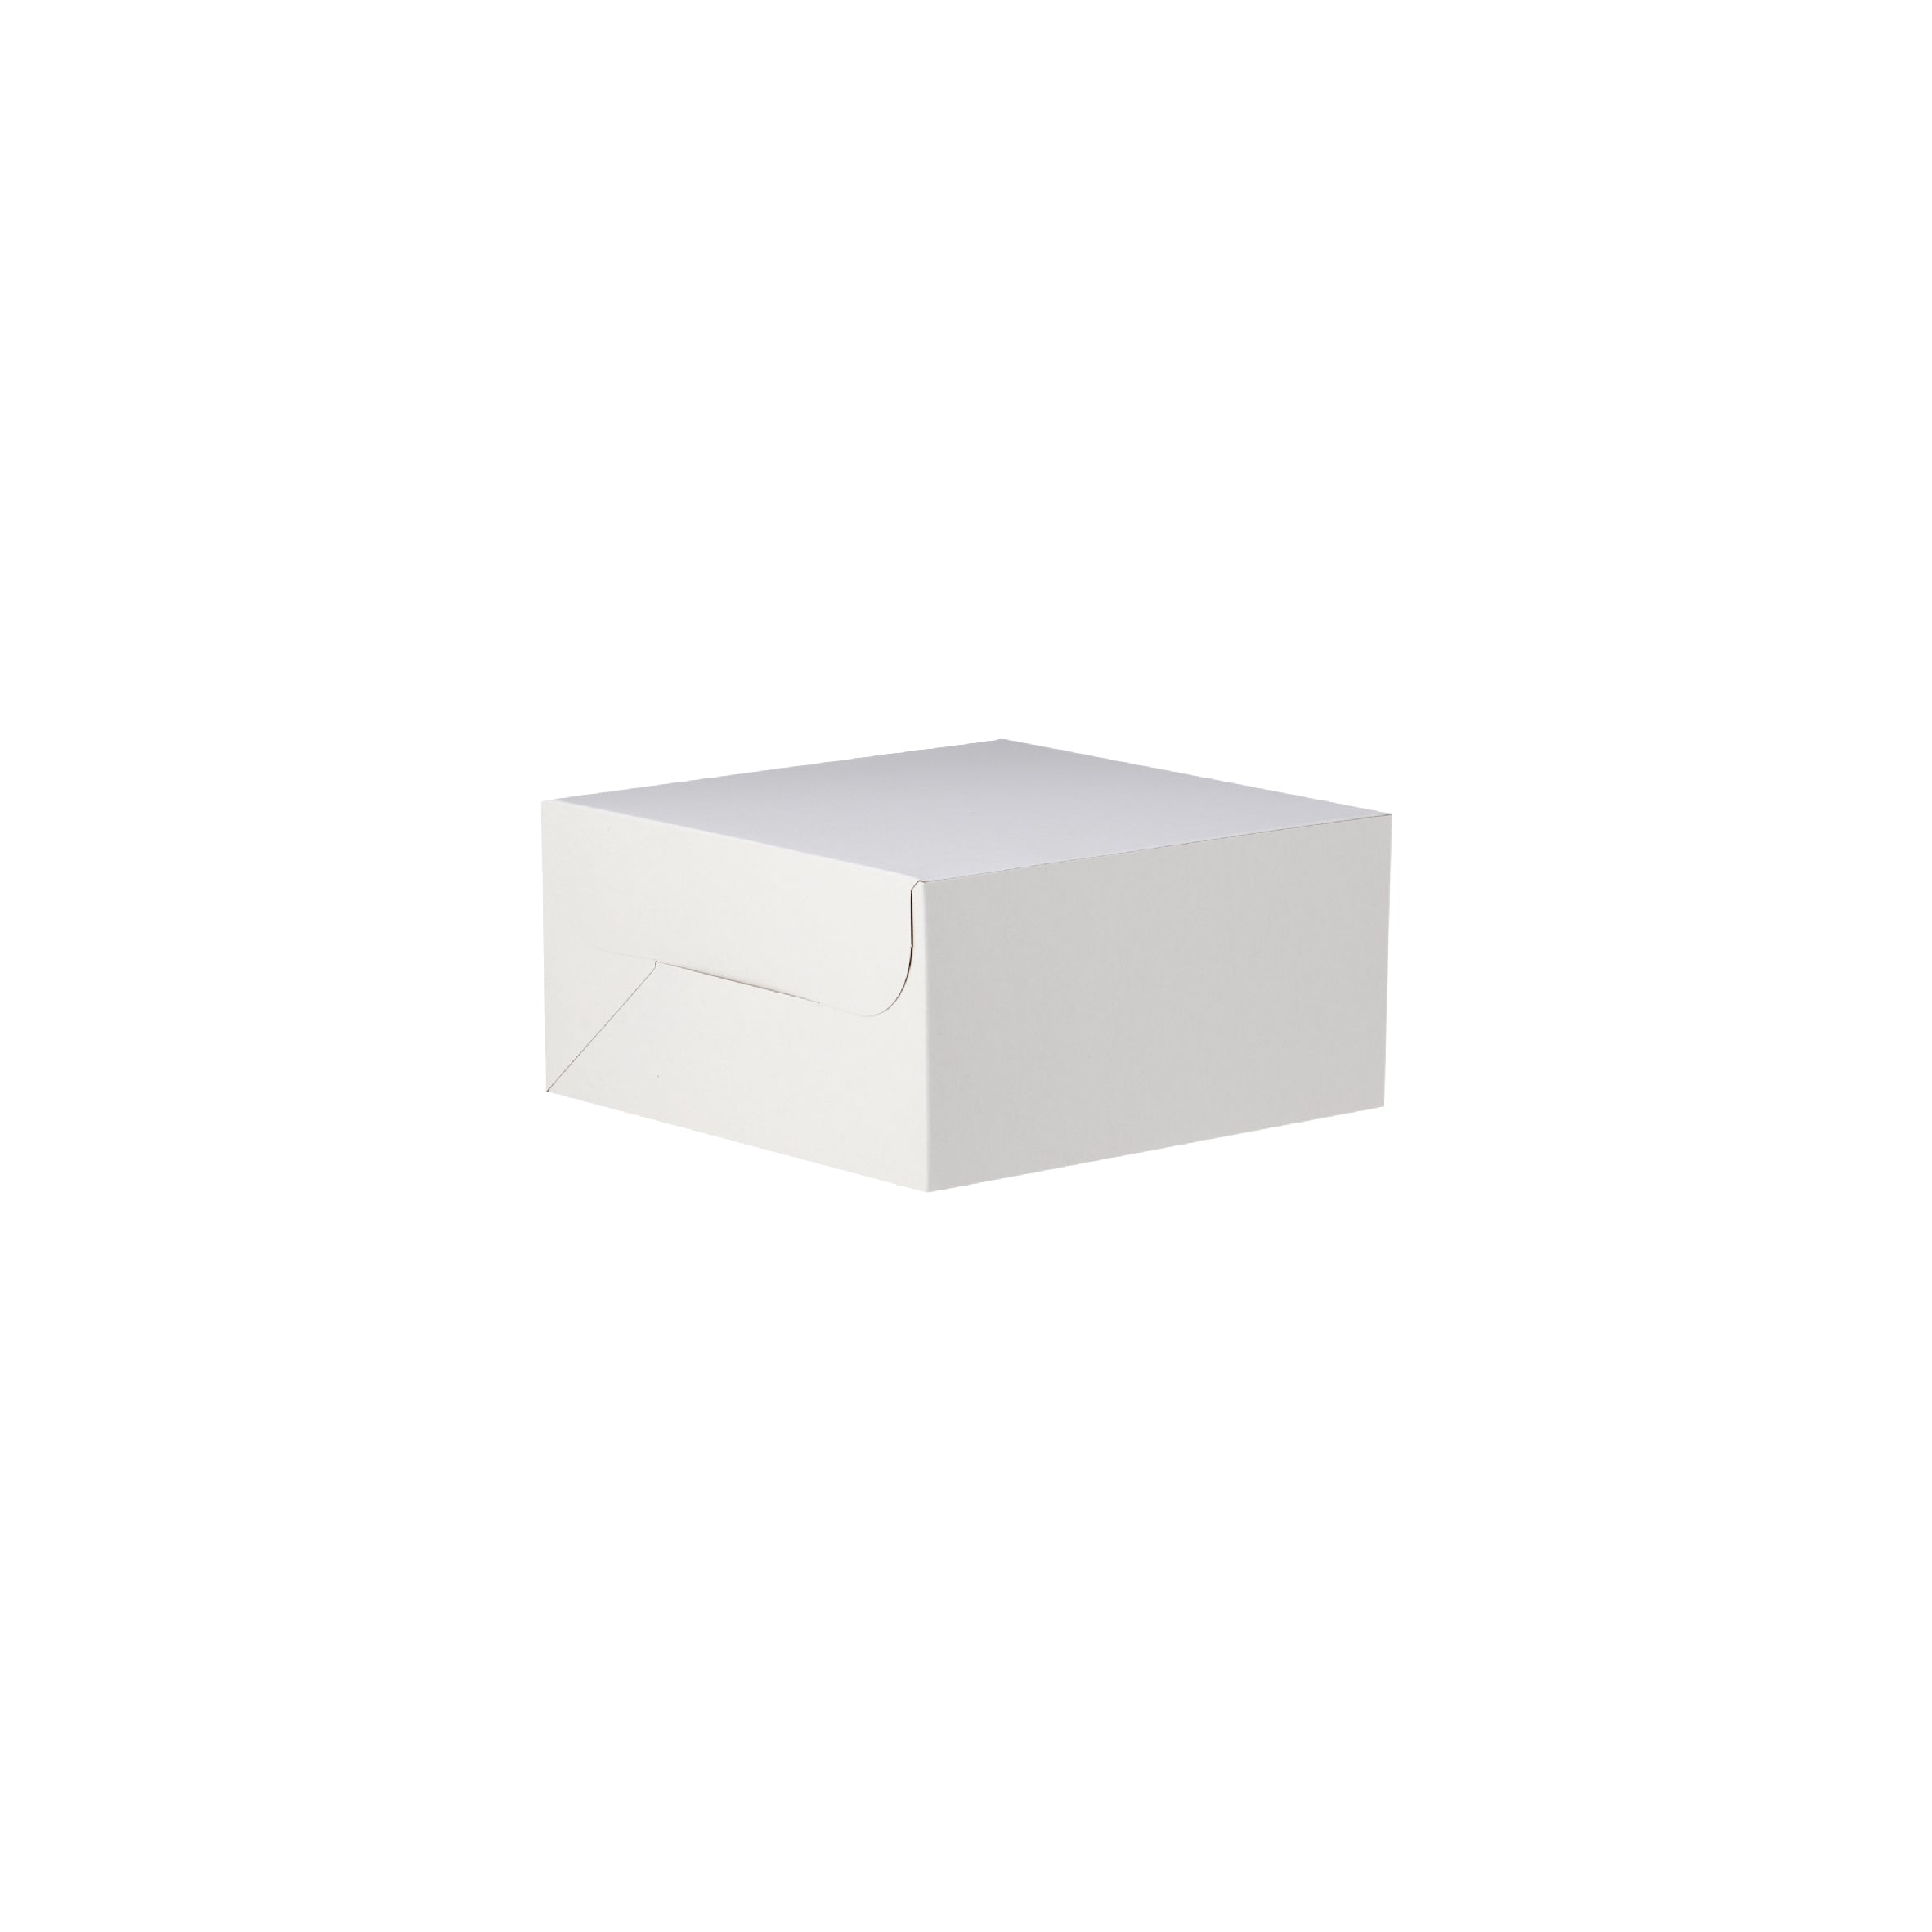 White Cake Box 100 Pieces - hotpackwebstore.com